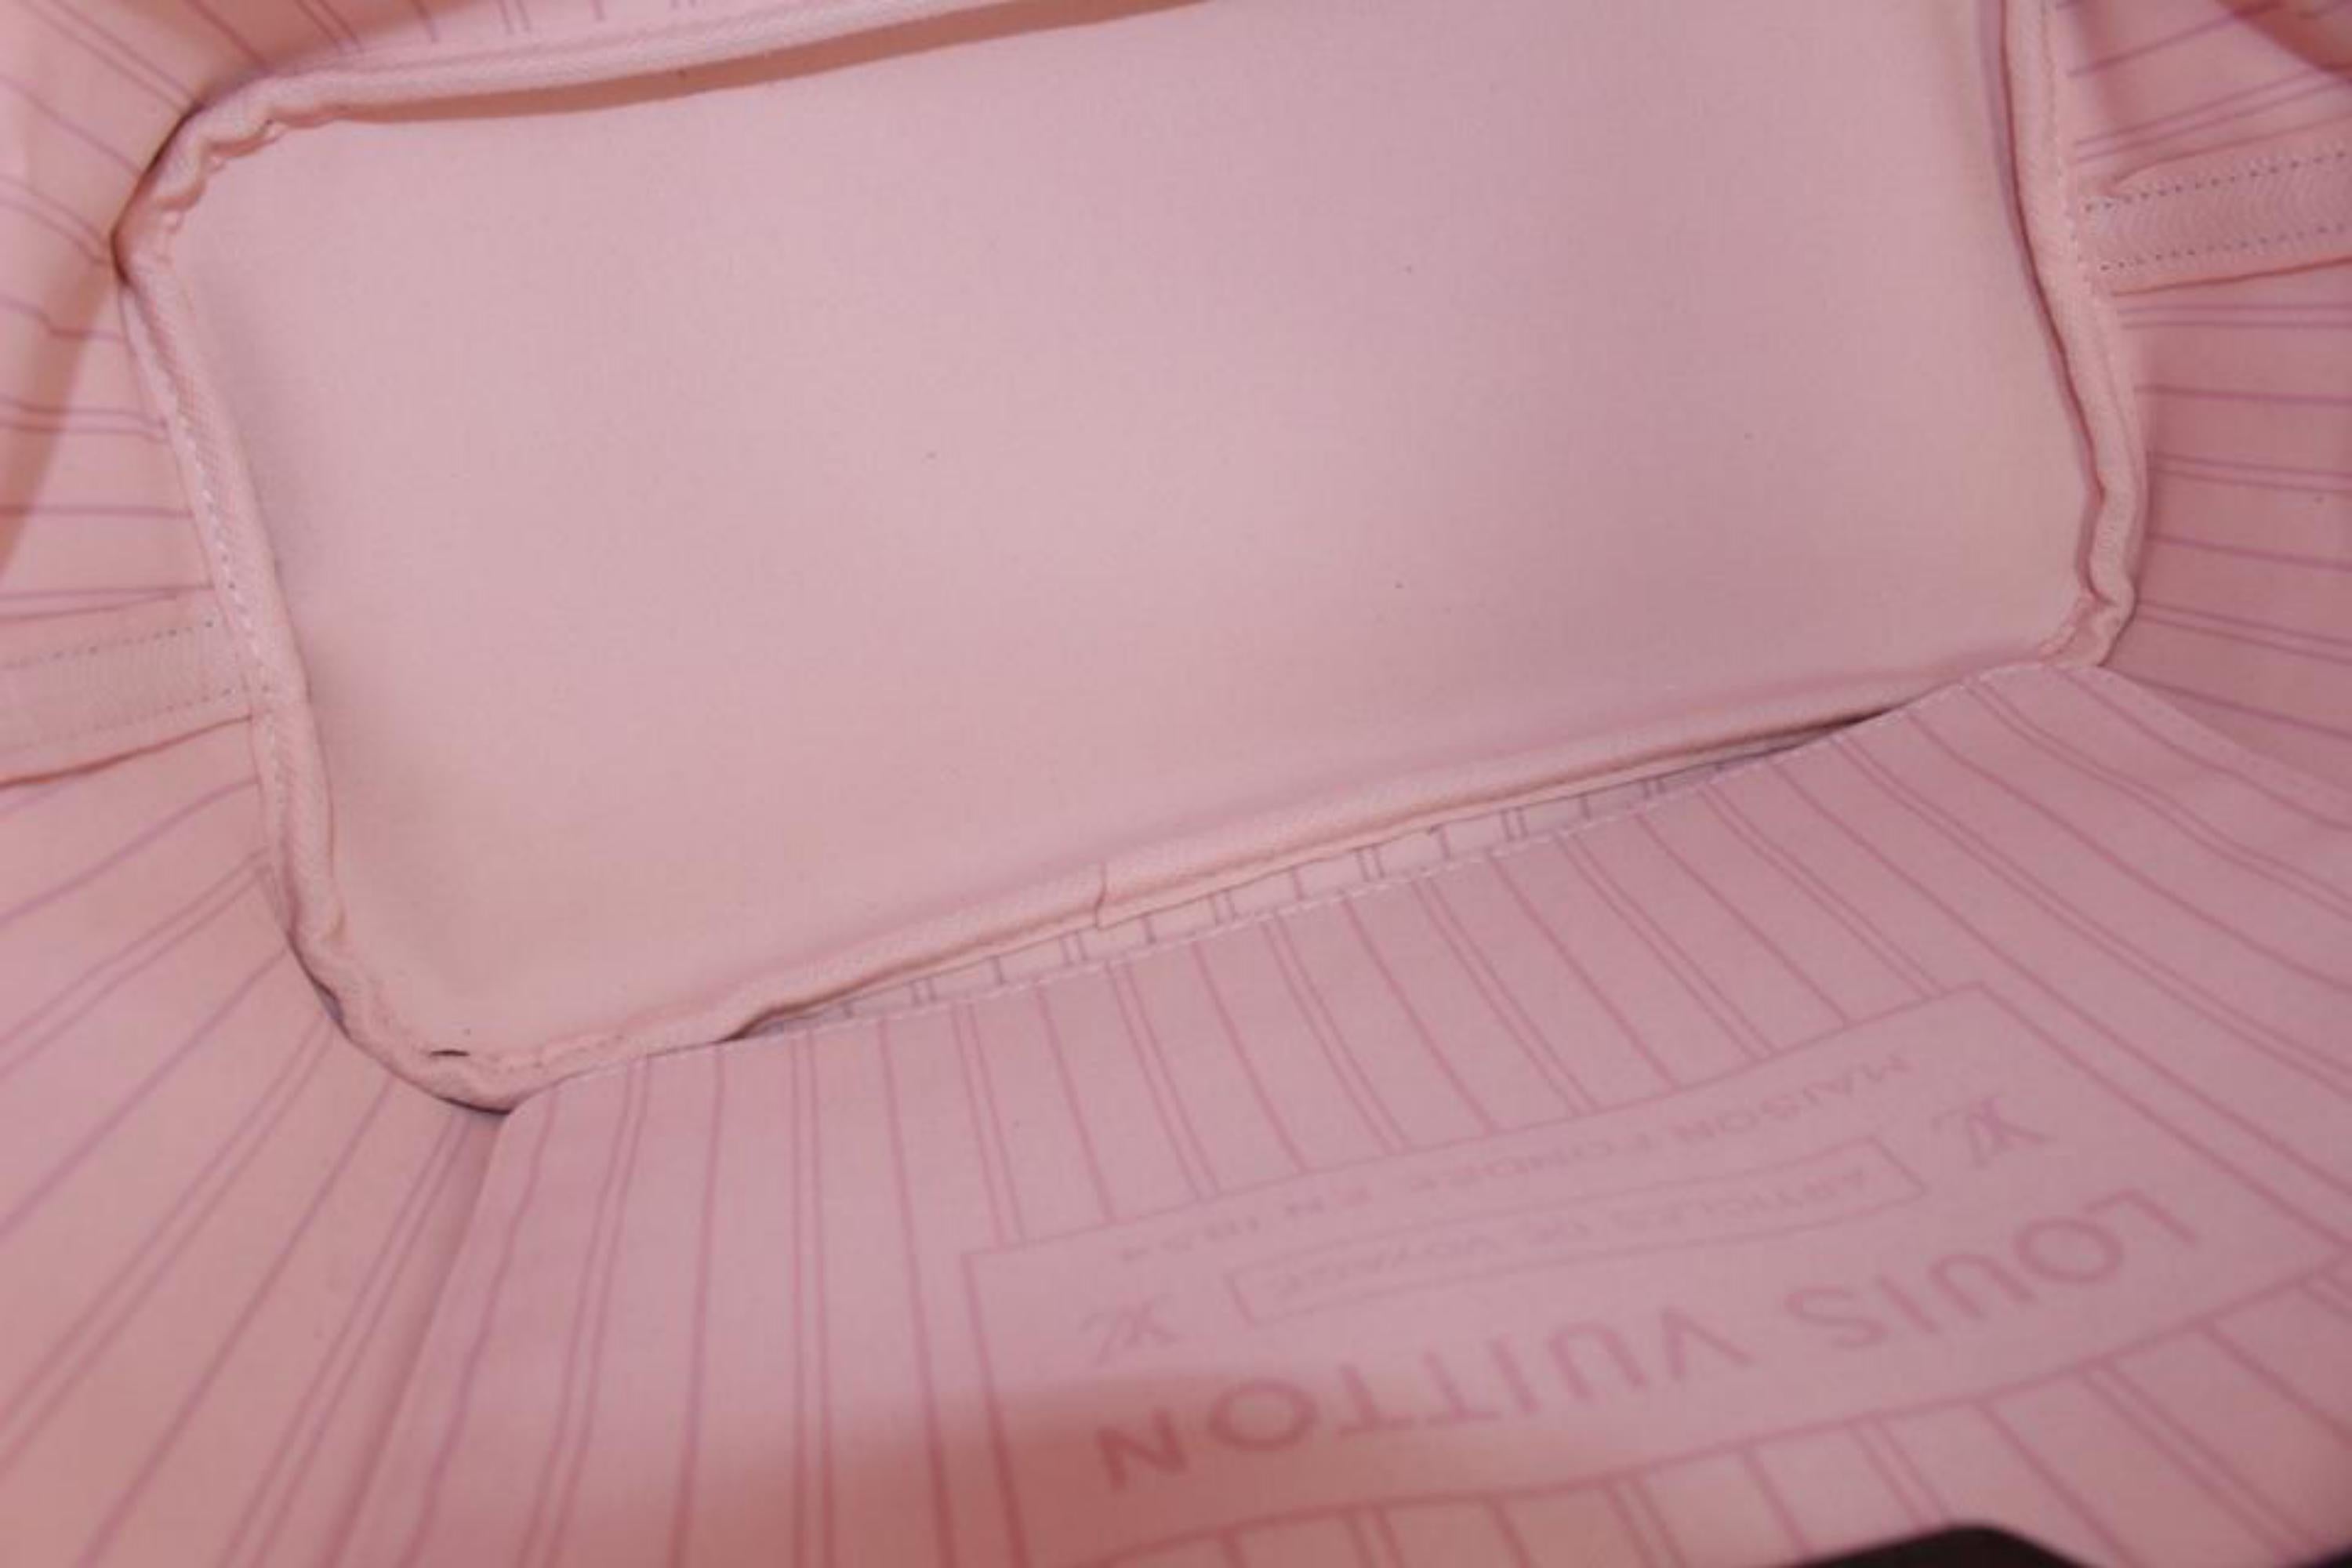 Louis Vuitton Damier Ebene Ballerine Pink Neverfull MM Tote Bag 72lv225s For Sale 1